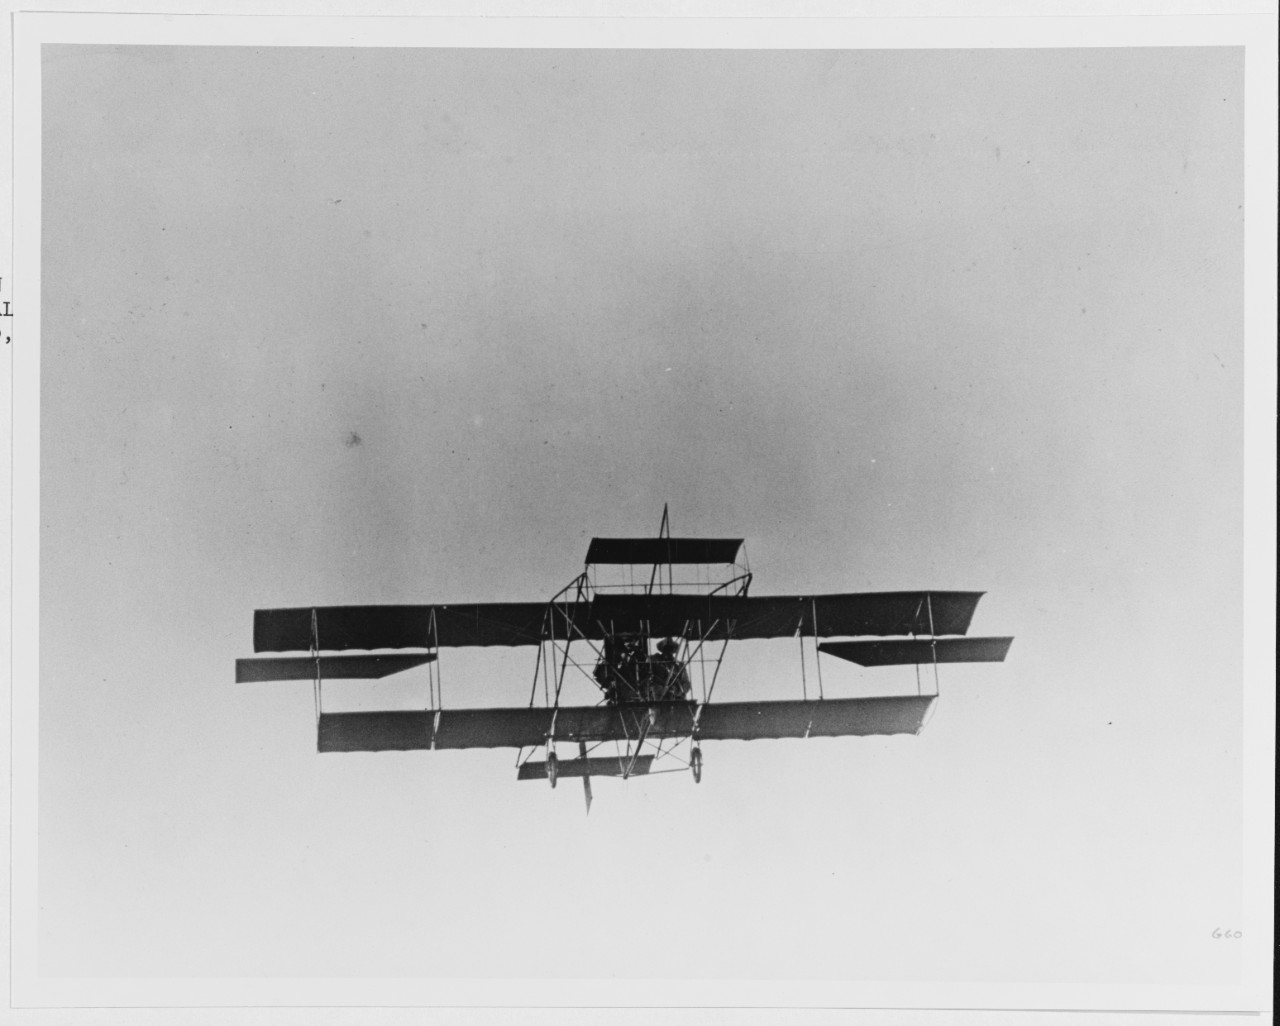 Curtiss pusher aircraft